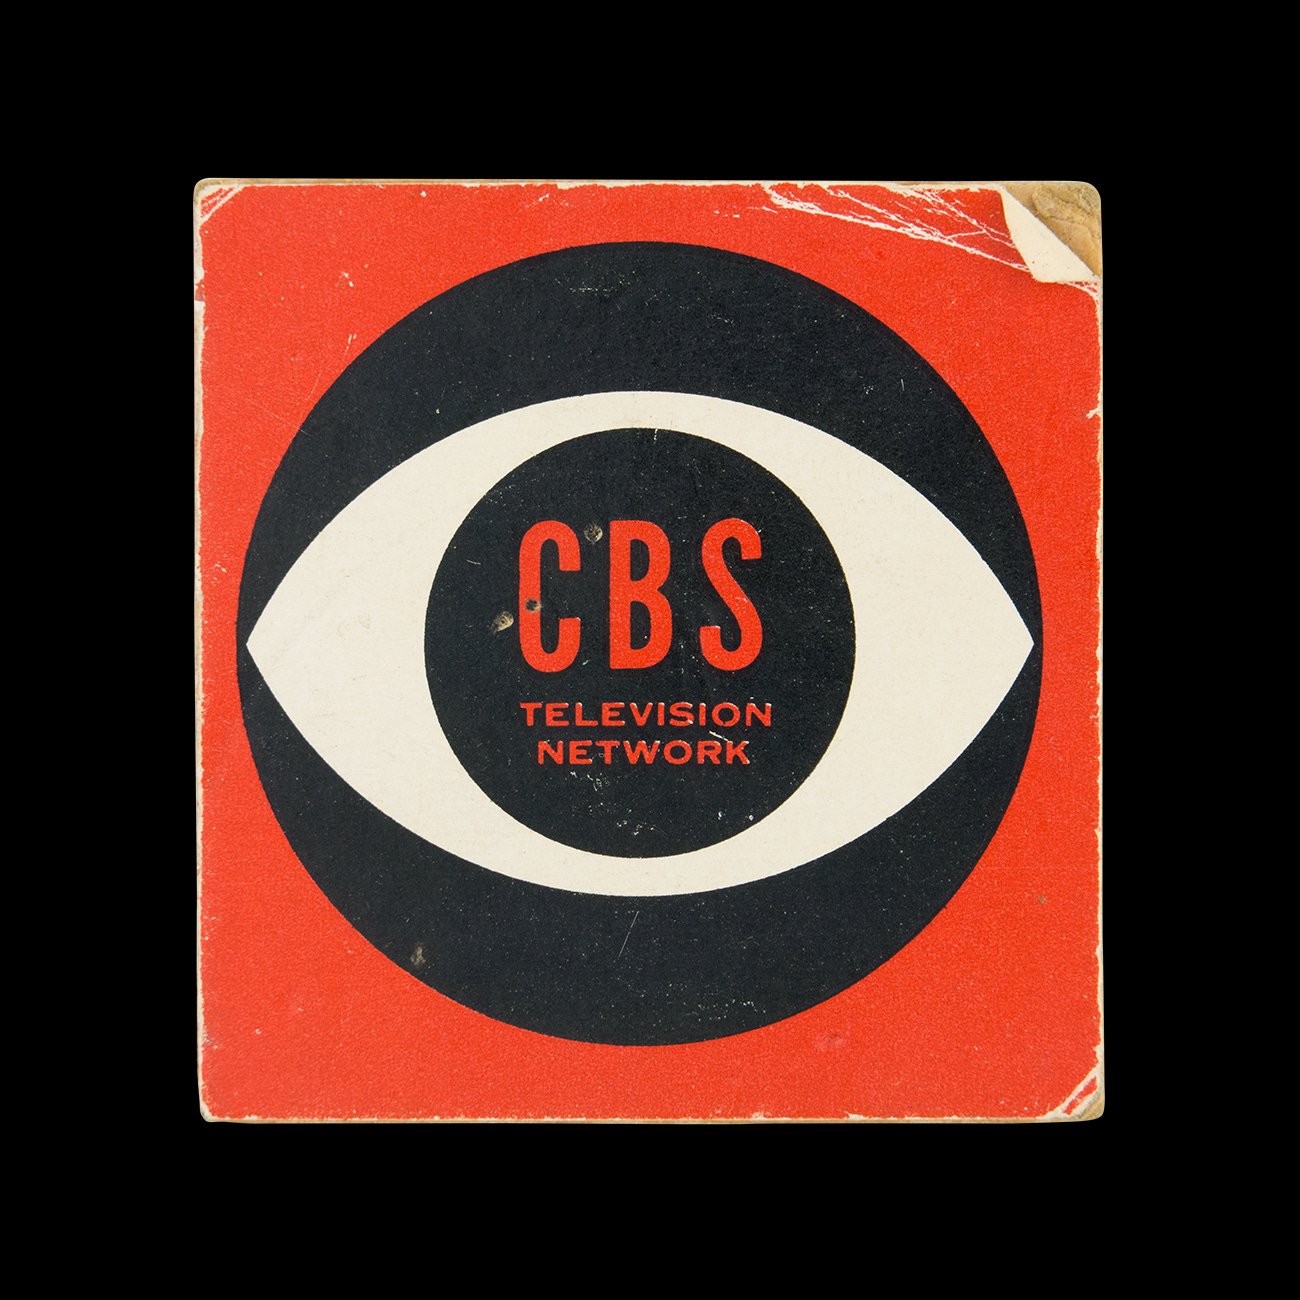 CBS Television Network logo design by William Golden, 1951